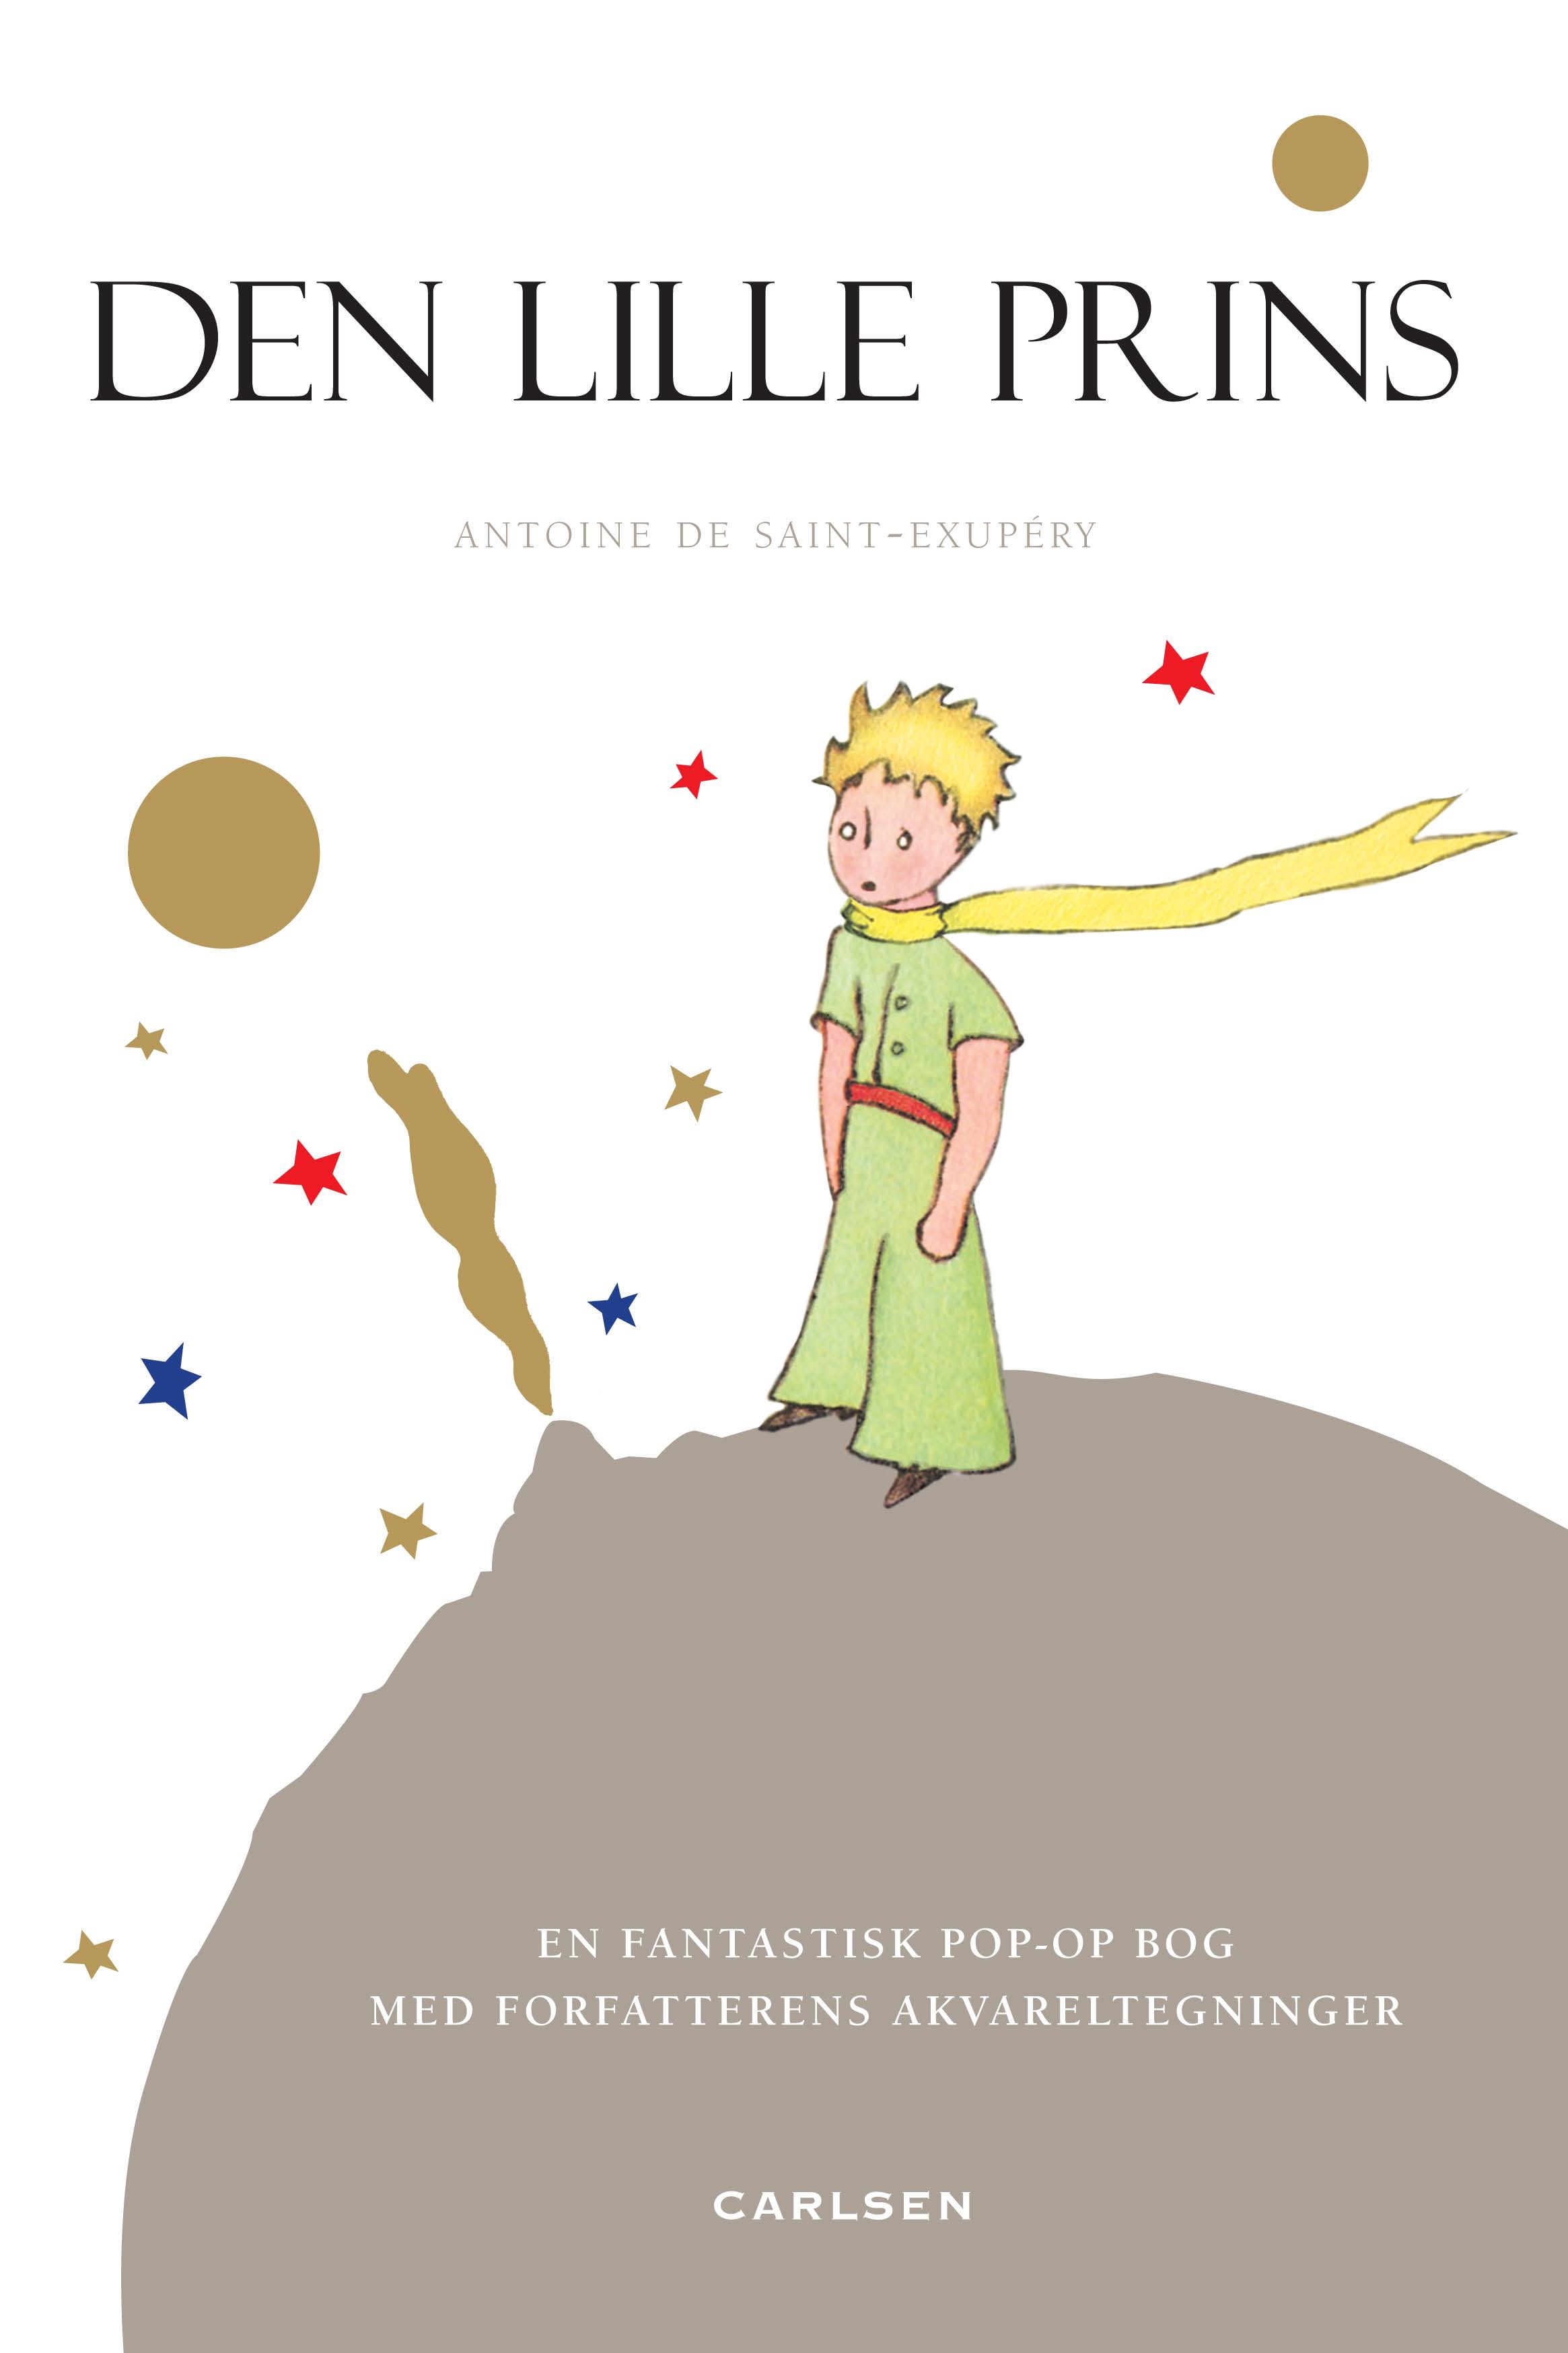 Den lille prins, Antoine de Saint-Exupery, børnebog, børnebøger, børnebogsklassiker, klassiske børnebøger